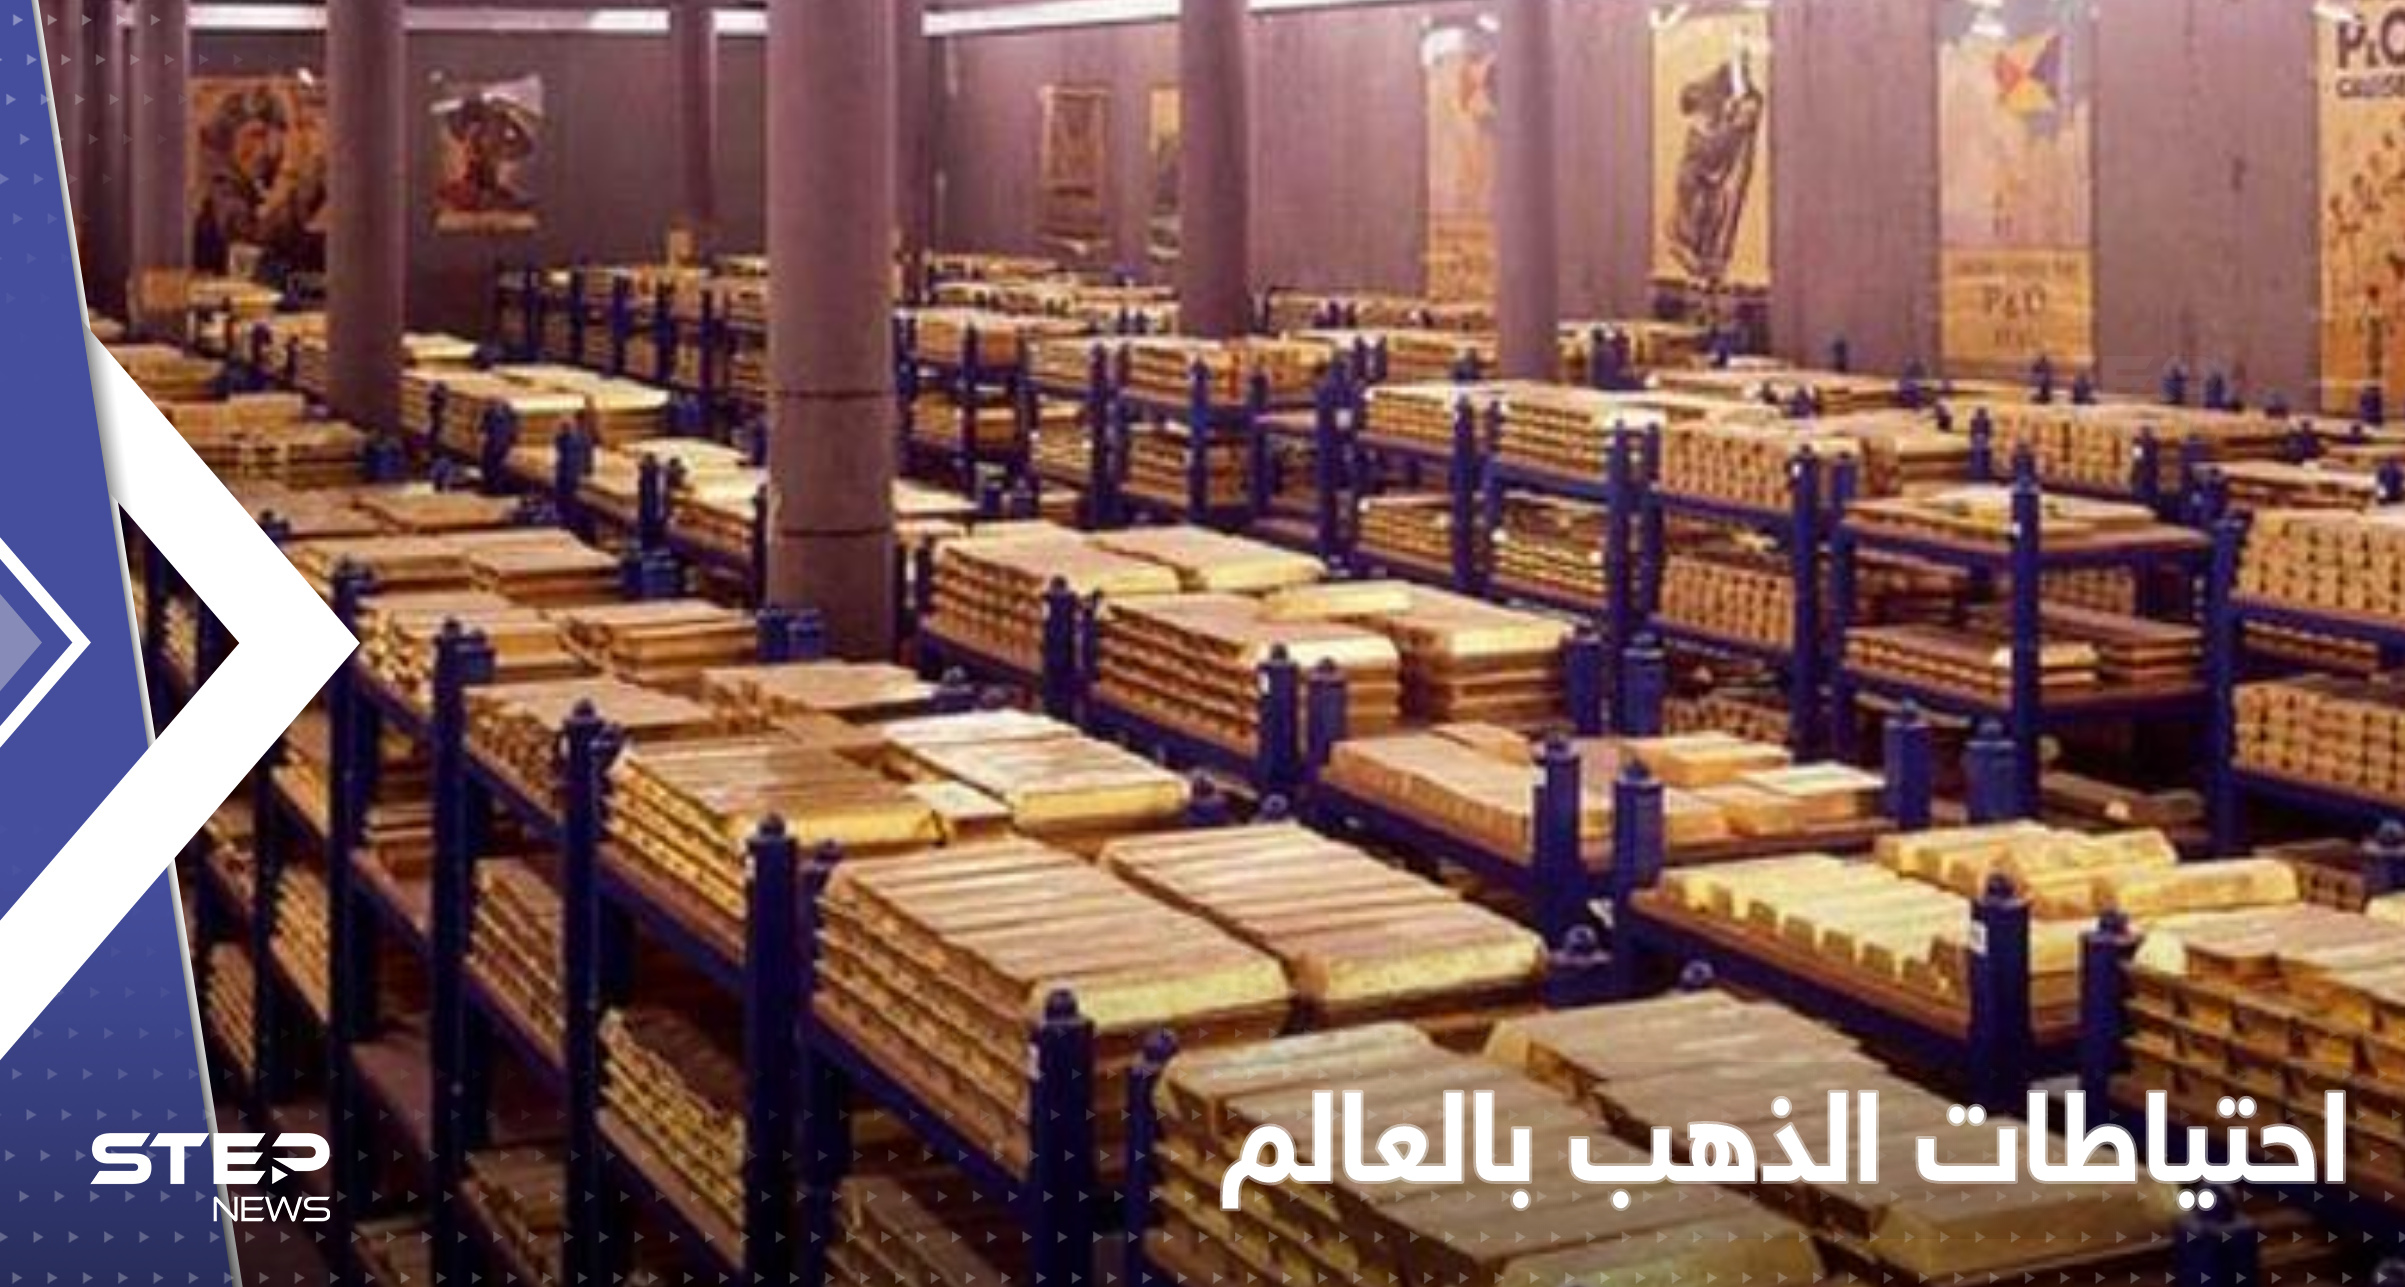  دول عربية ضمن الأعلى نمواً في احتياطات الذهب.. وأرقام "مفاجئة" عن تركيا